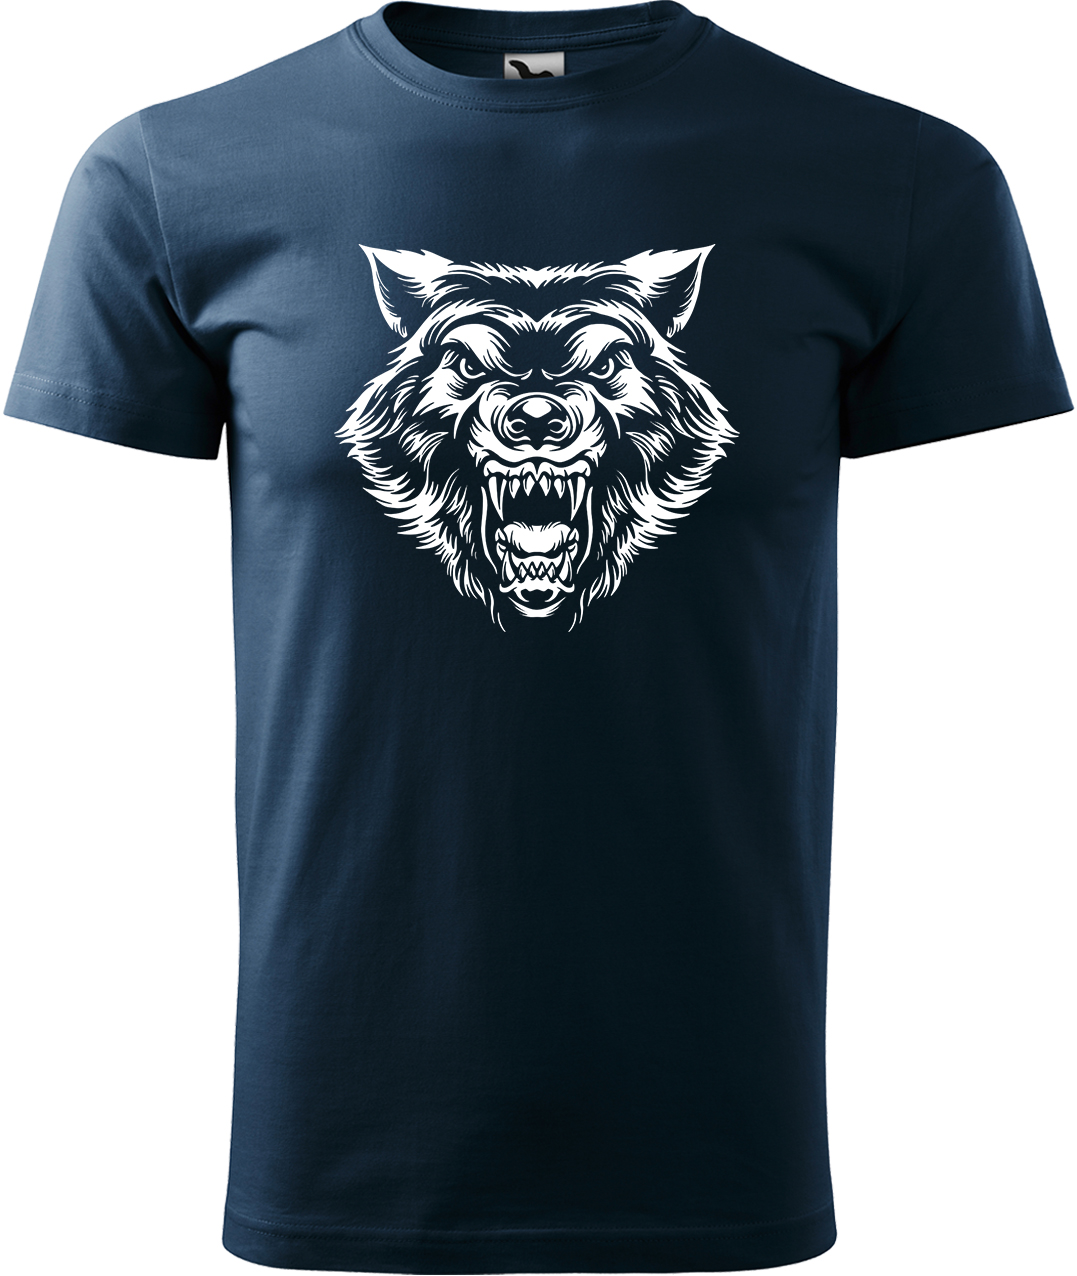 Pánské tričko s vlkem - Rozzuřený vlk Velikost: 4XL, Barva: Námořní modrá (02), Střih: pánský